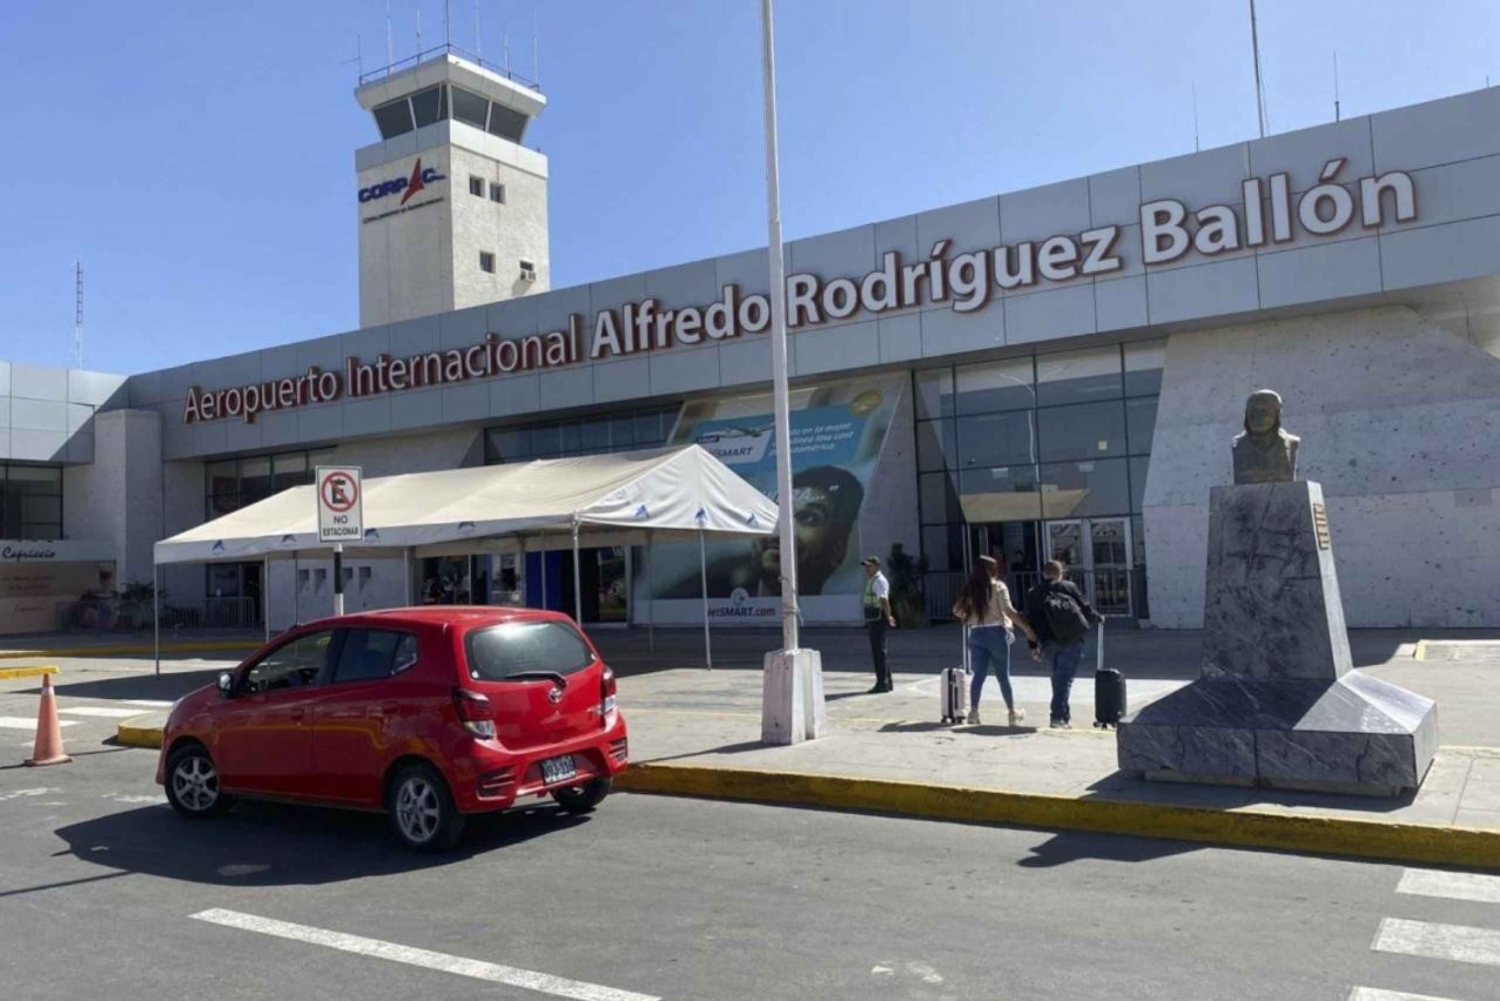 Prise en charge à l'aéroport : Arequipa